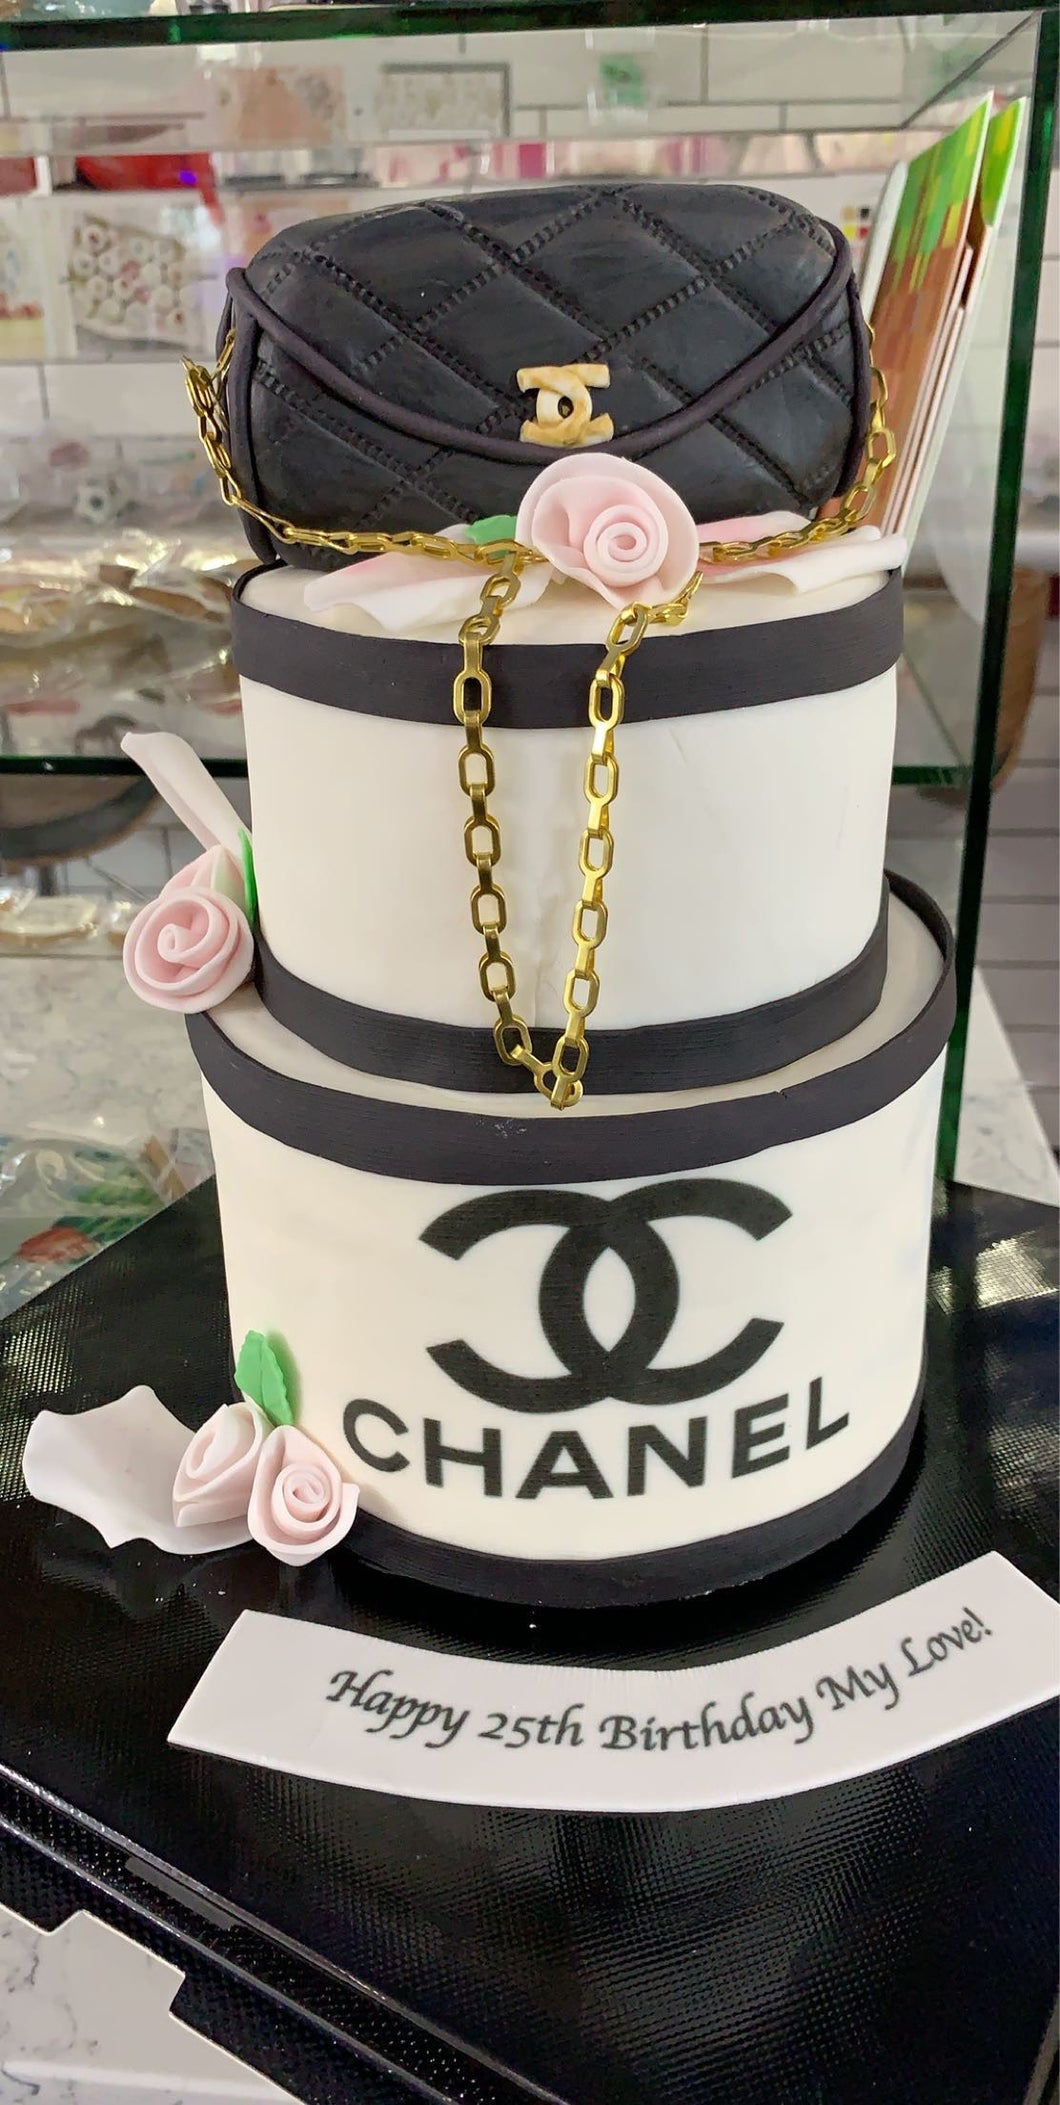 Sweets by Nish - Chanel cake #fondantcake #cake #birthdaycake #instacake  #cakedecorating #chanel #chanelcake #fondantdecoration #cakesofinstagram  #cakestagram #cakeoftheday #sweet #food #happybirthday #party #event  #dessert #sweetsbynish | Facebook